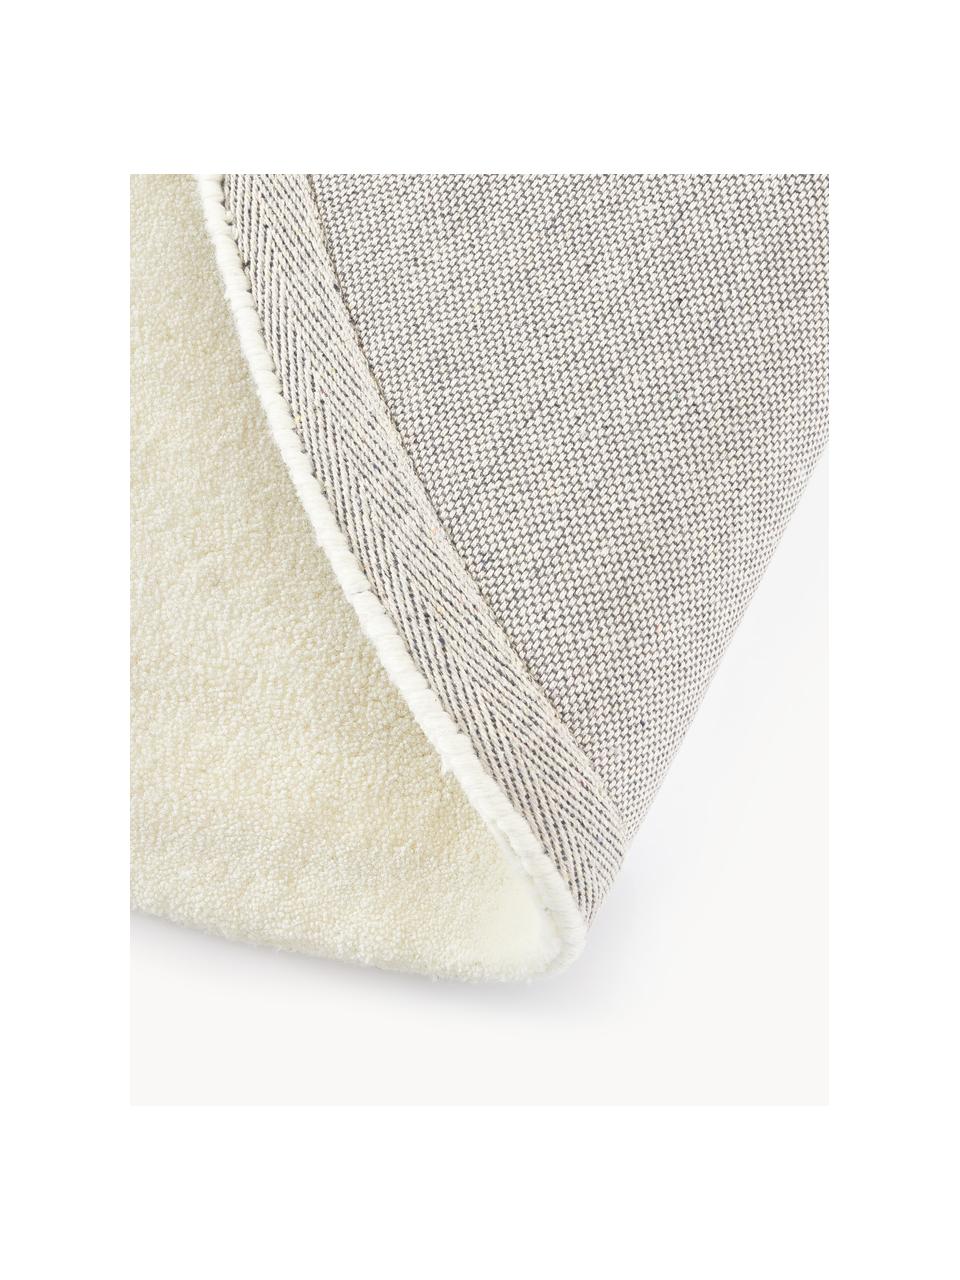 Tappeto rotondo in lana a pelo corto fatto a mano Jadie, Retro: 70% cotone, 30% poliester, Bianco crema, Ø 150 cm (taglia M)